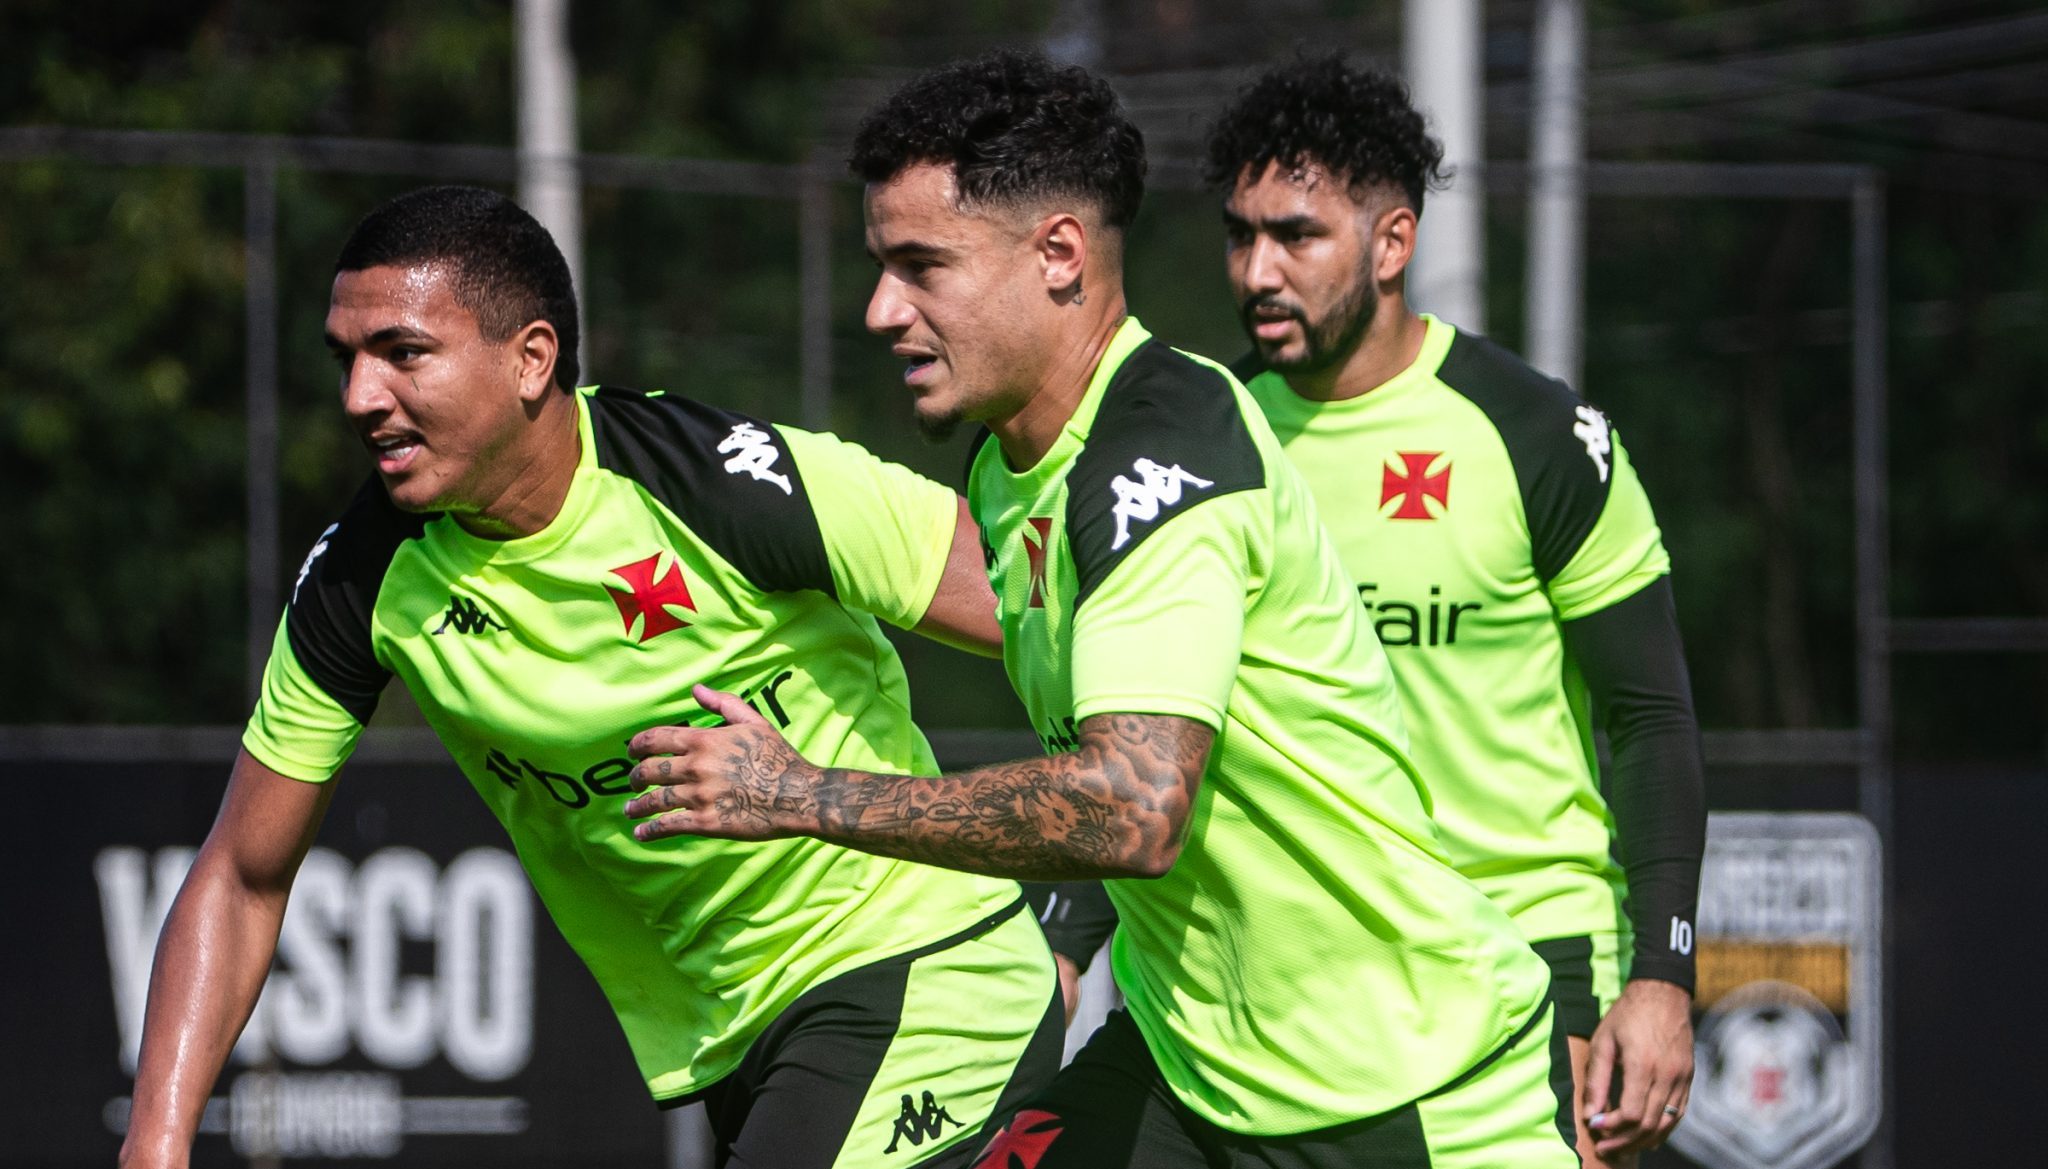 Mateus Carvalho, Coutinho e Payet em treino do Vasco (Foto: Leandro Amorim/Vasco)